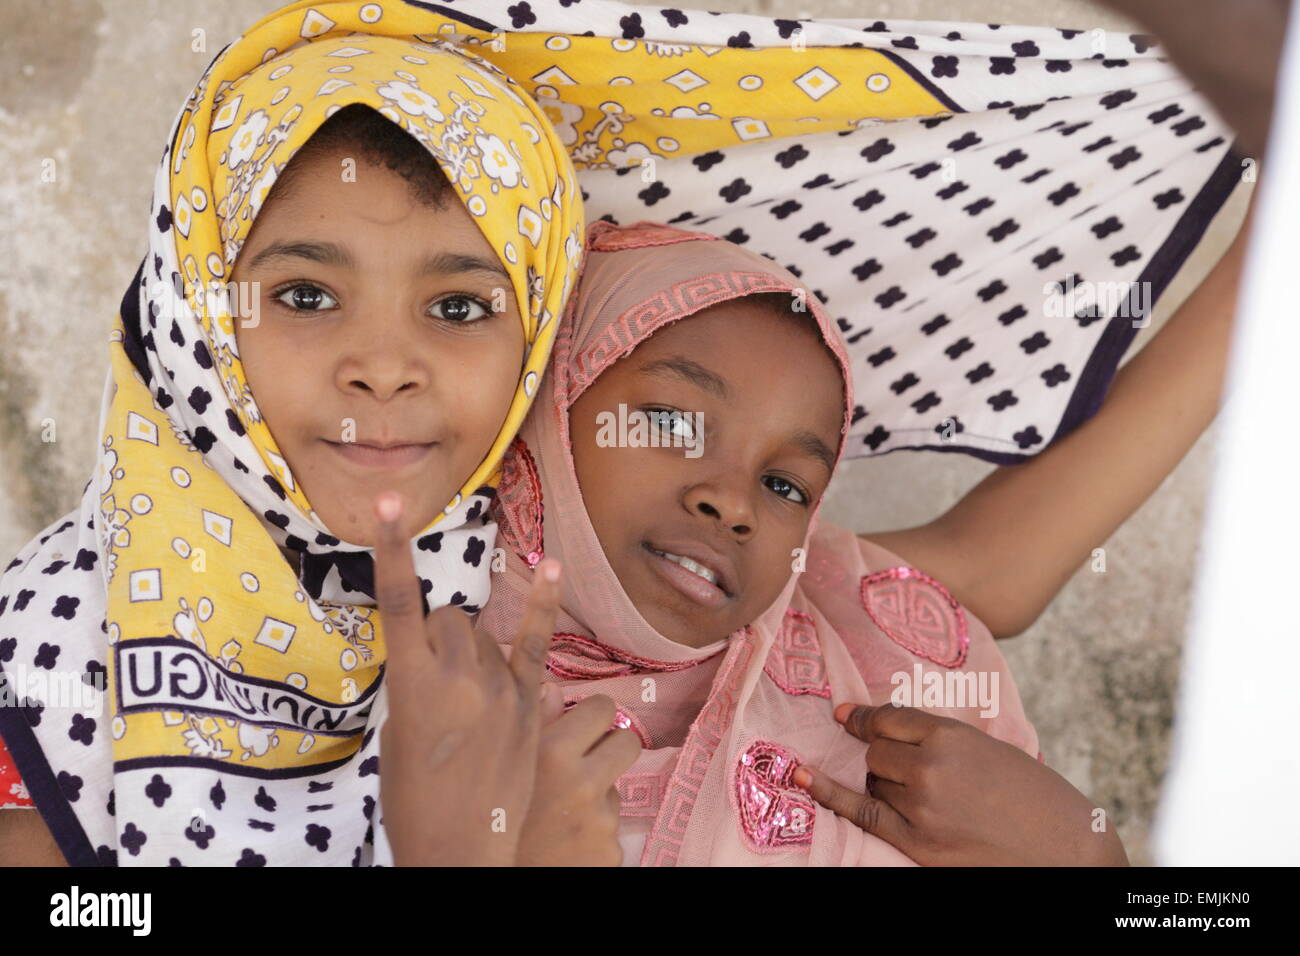 Two young girls in saris, Zanzibar Stock Photo